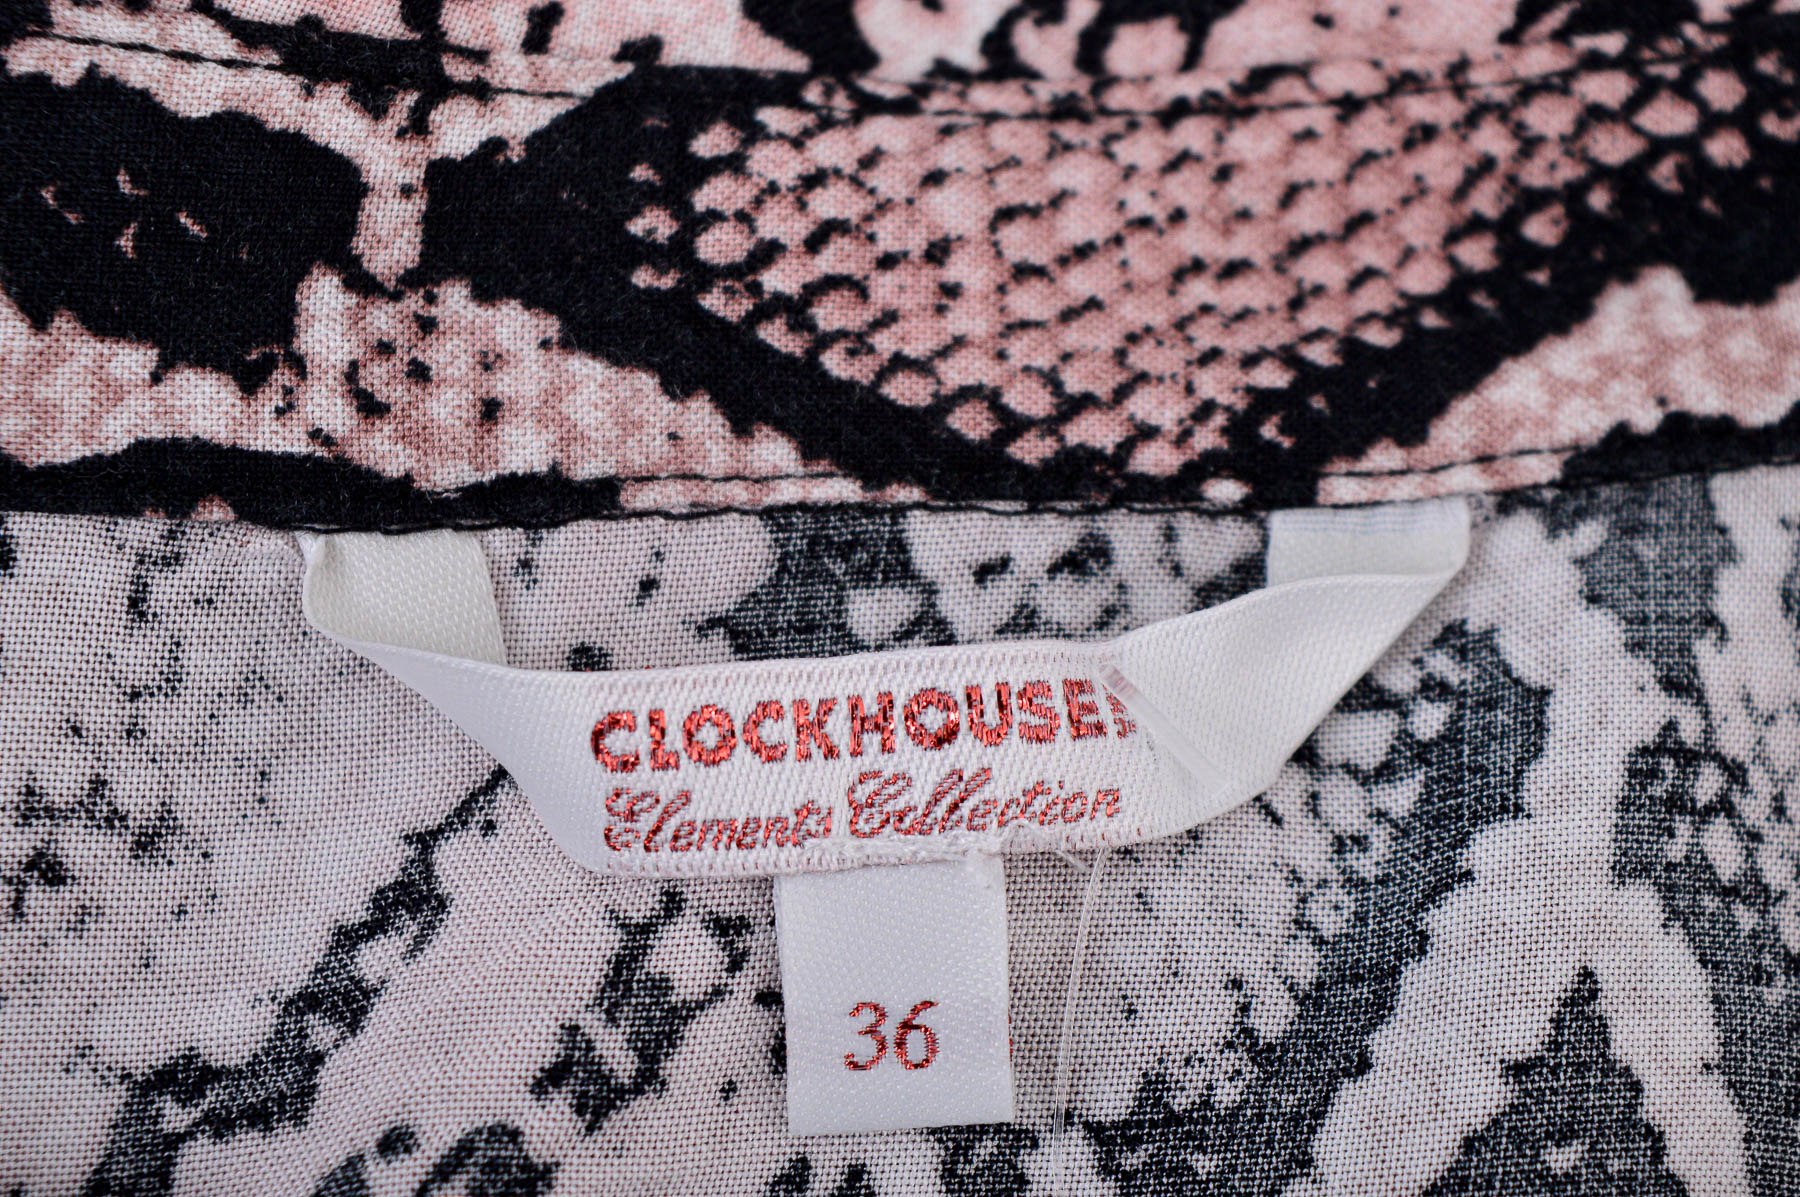 Cămașa de damă - Clockhouse - 2